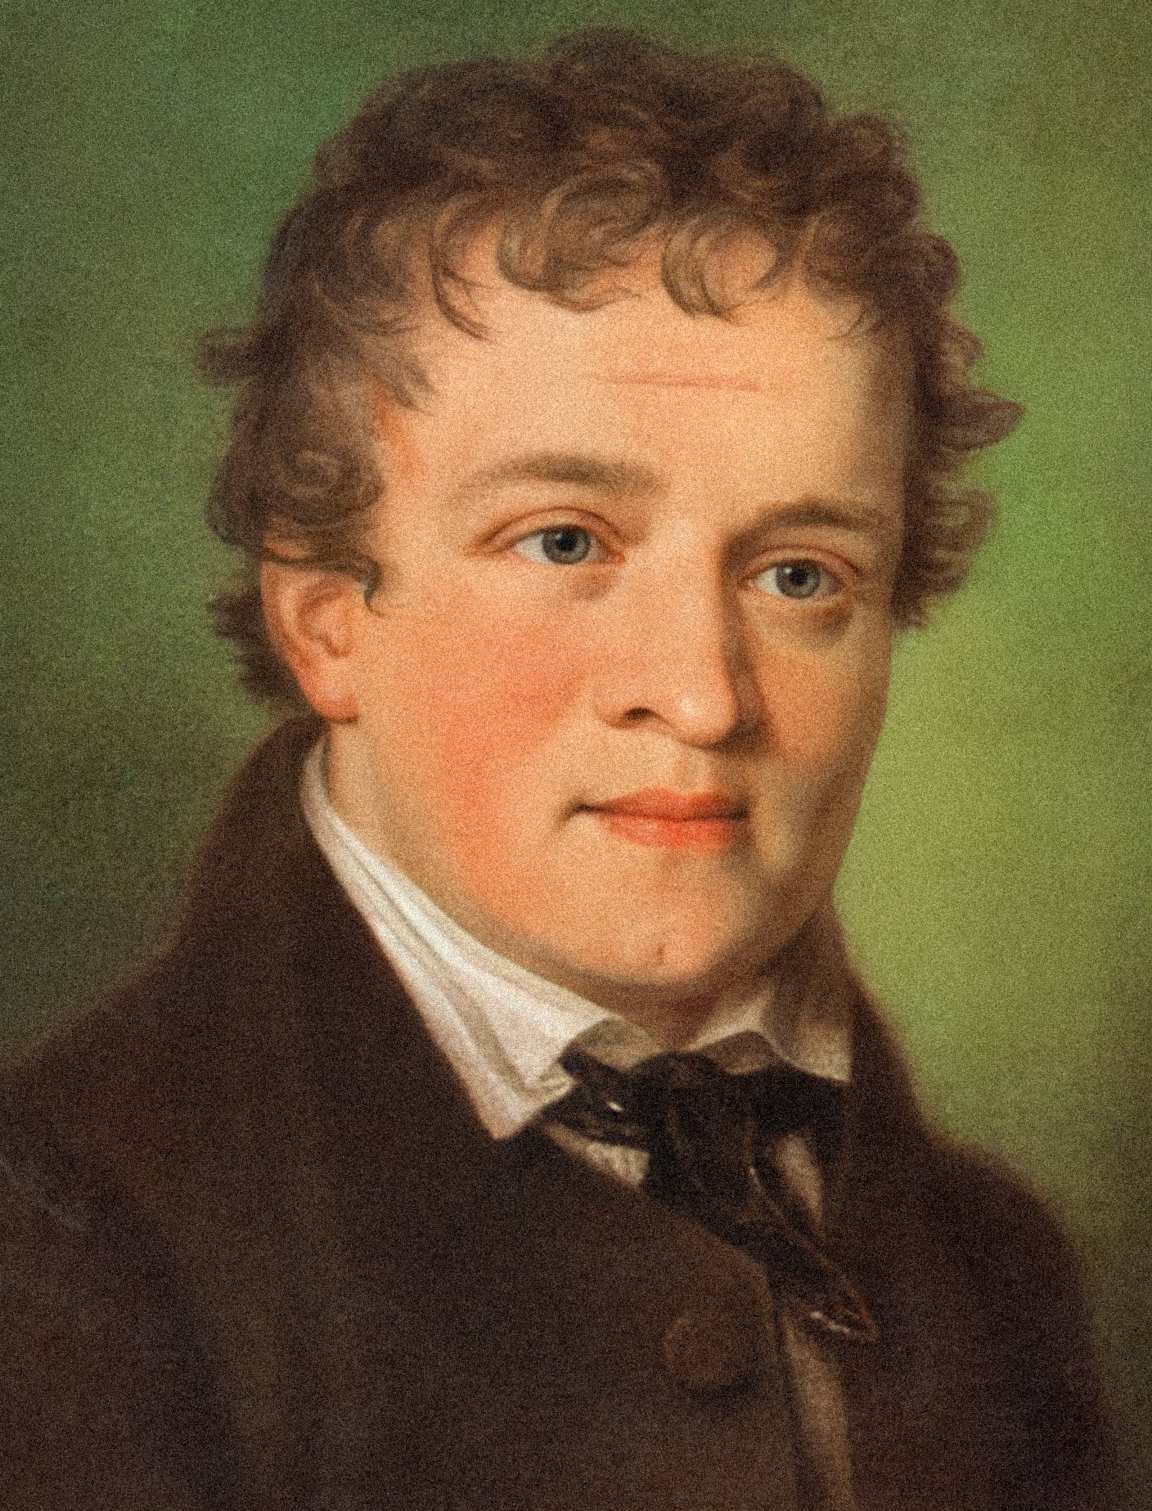 卡斯帕·豪瑟 (Kaspar Hauser)：這位 1820 年代身份不明的男孩神秘地出現，僅在 5 年後才被謀殺 2